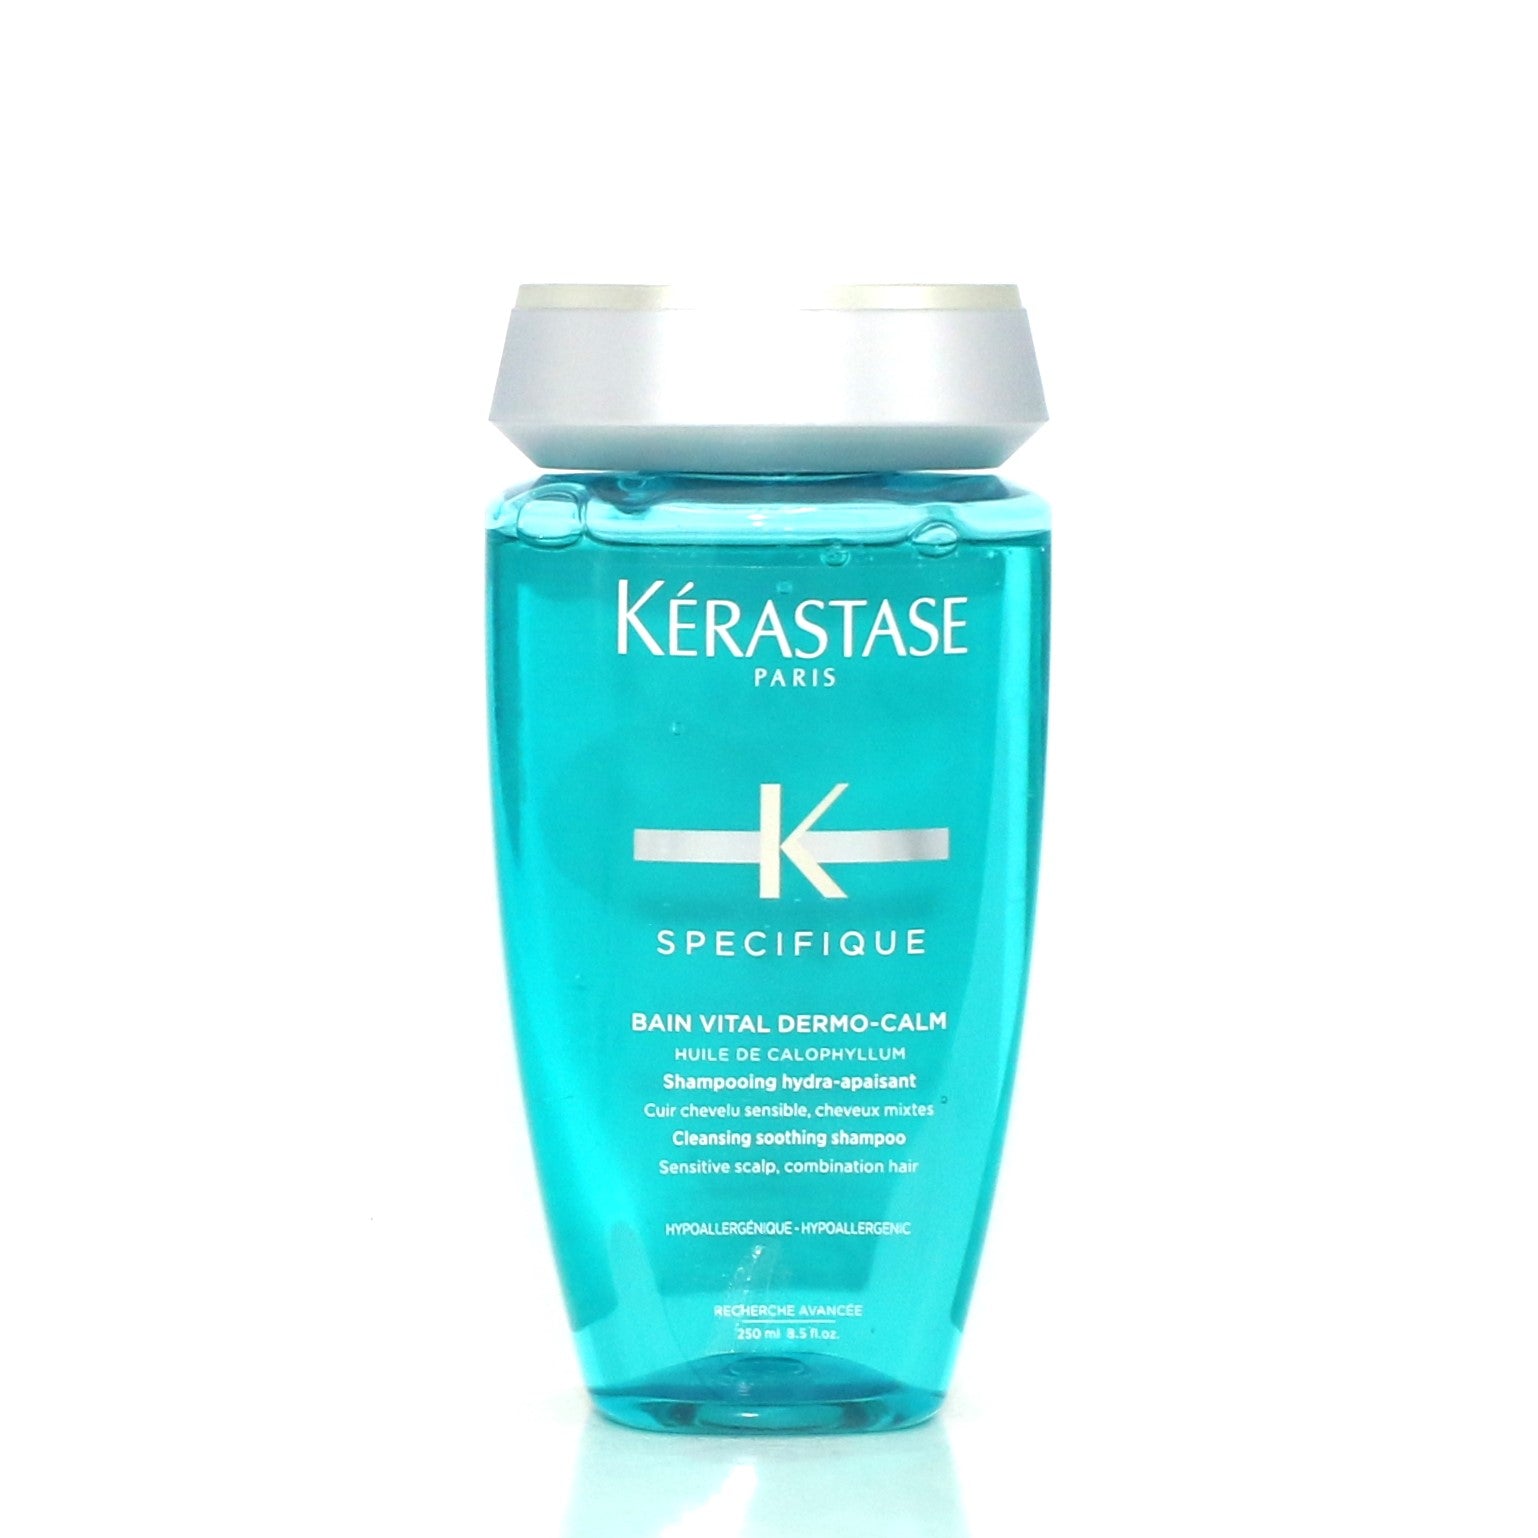 KERASTASE K Specifique Cleansing Soothing Shampoo